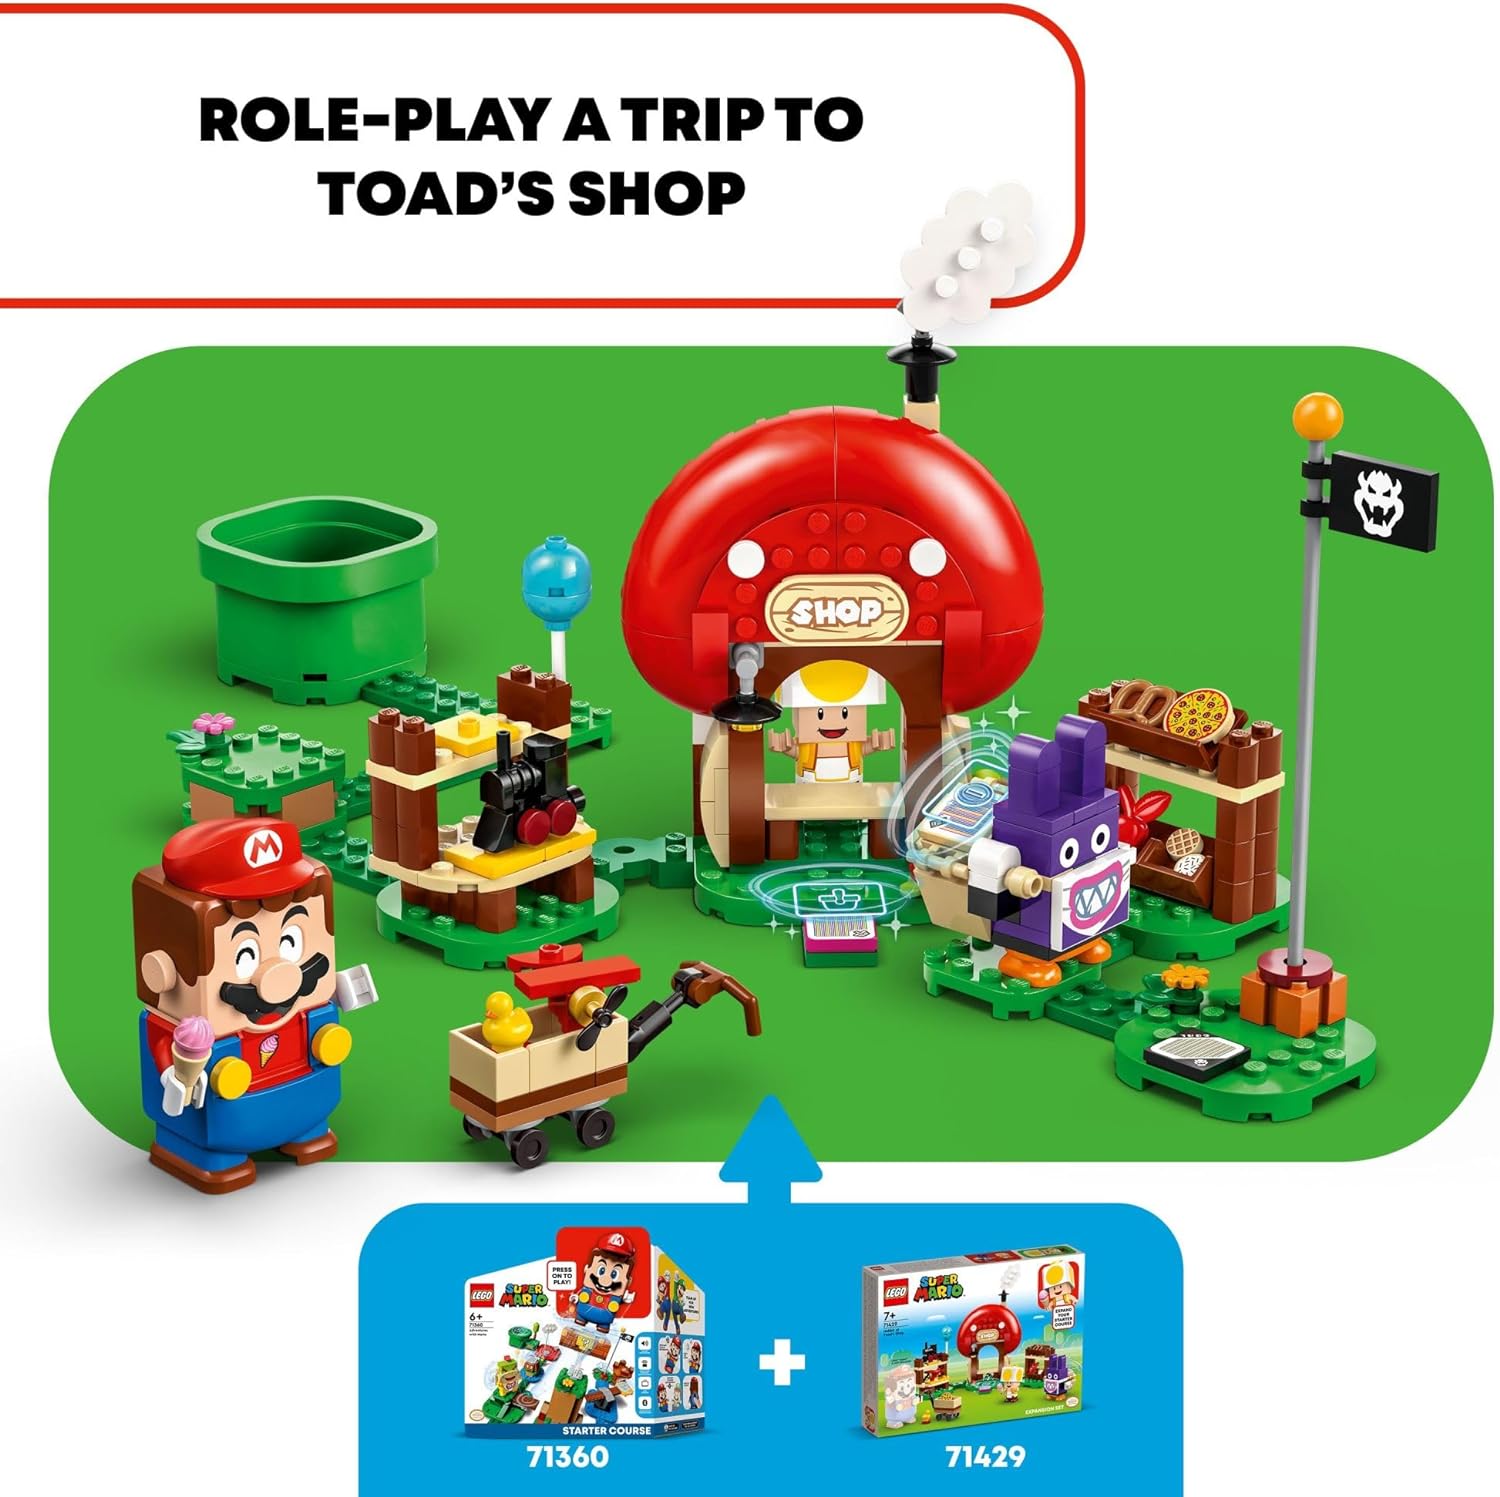 مجموعة توسيع سوبر ماريو نابيت آت تودز شوب من ليجو 71429، بناء وعرض لعبة سوبر ماريو داي للأطفال، فكرة هدية لعبة فيديو للاعبين.